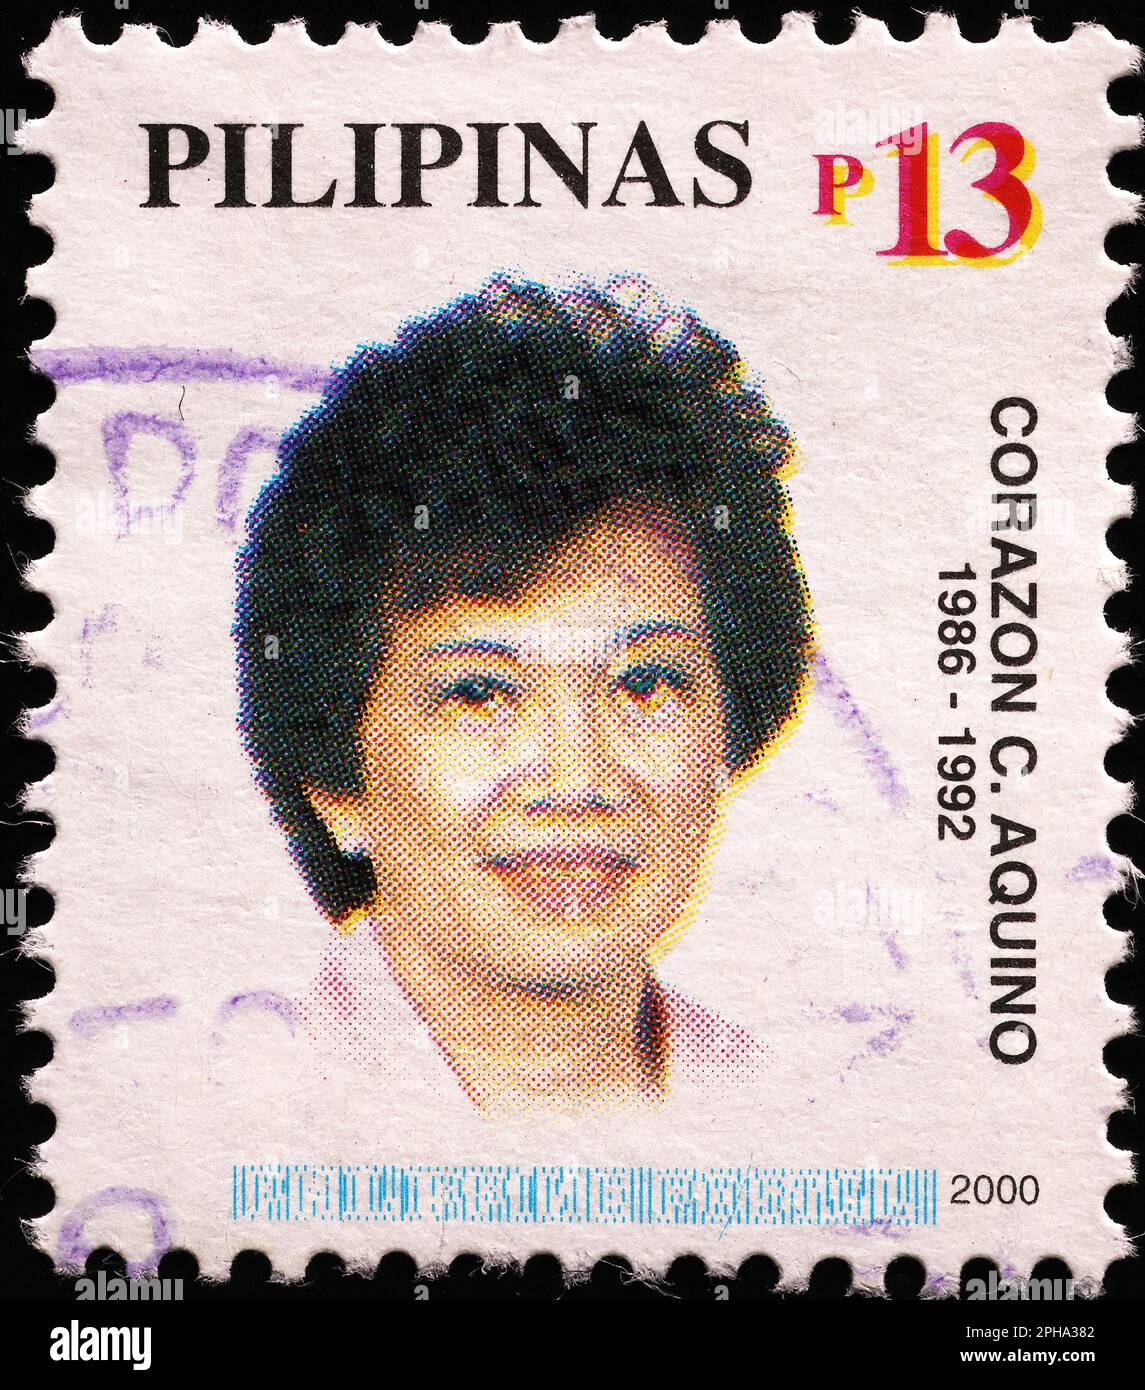 Corazon Aquino sur timbre des Philippines Banque D'Images